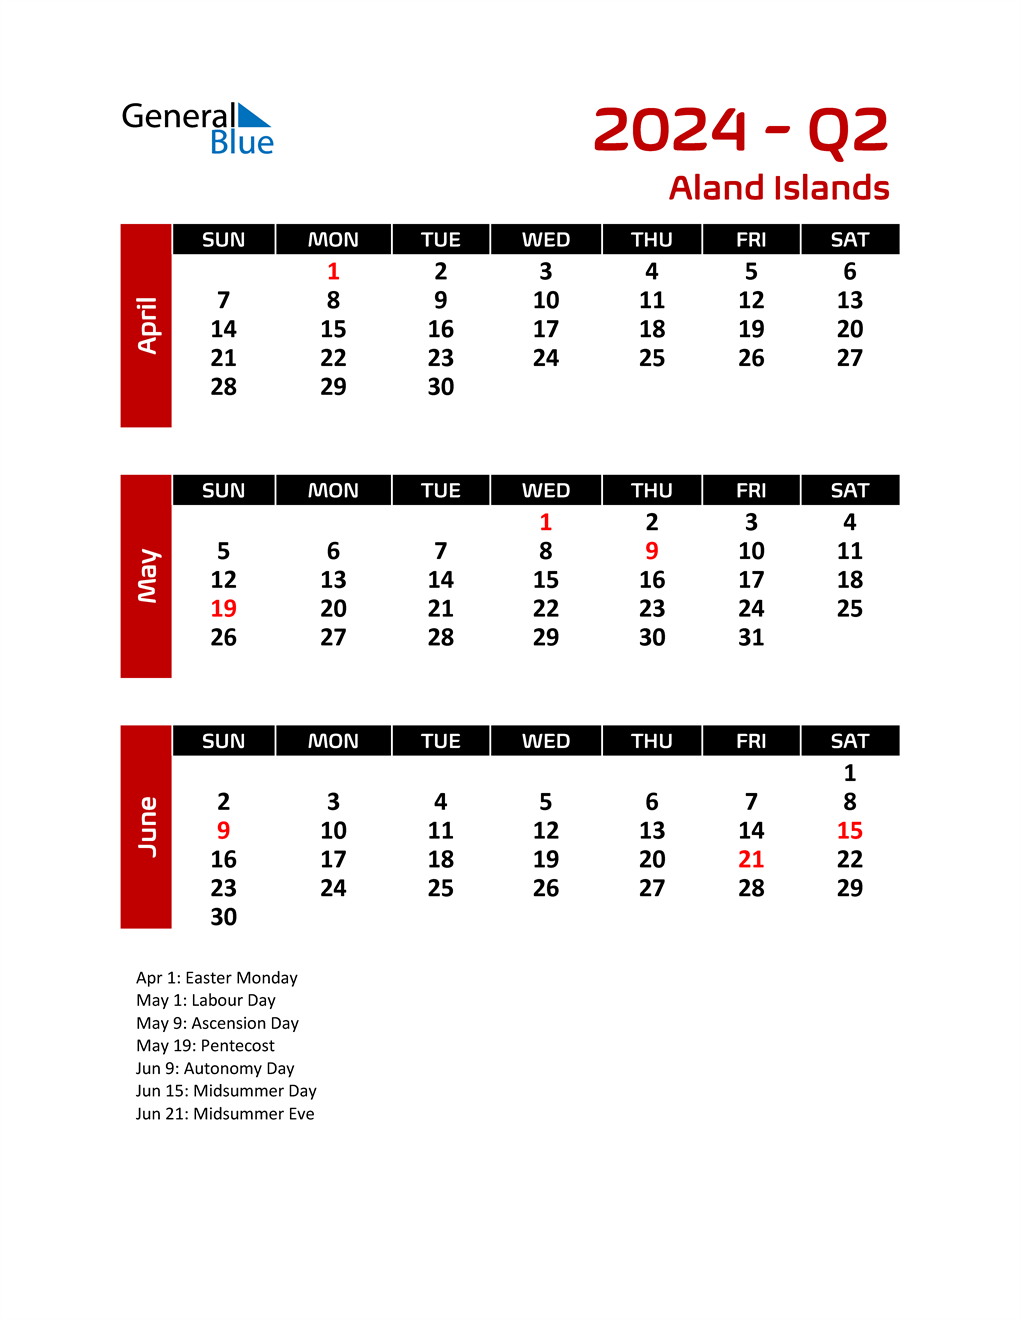 q2-2024-quarterly-calendar-with-aland-islands-holidays